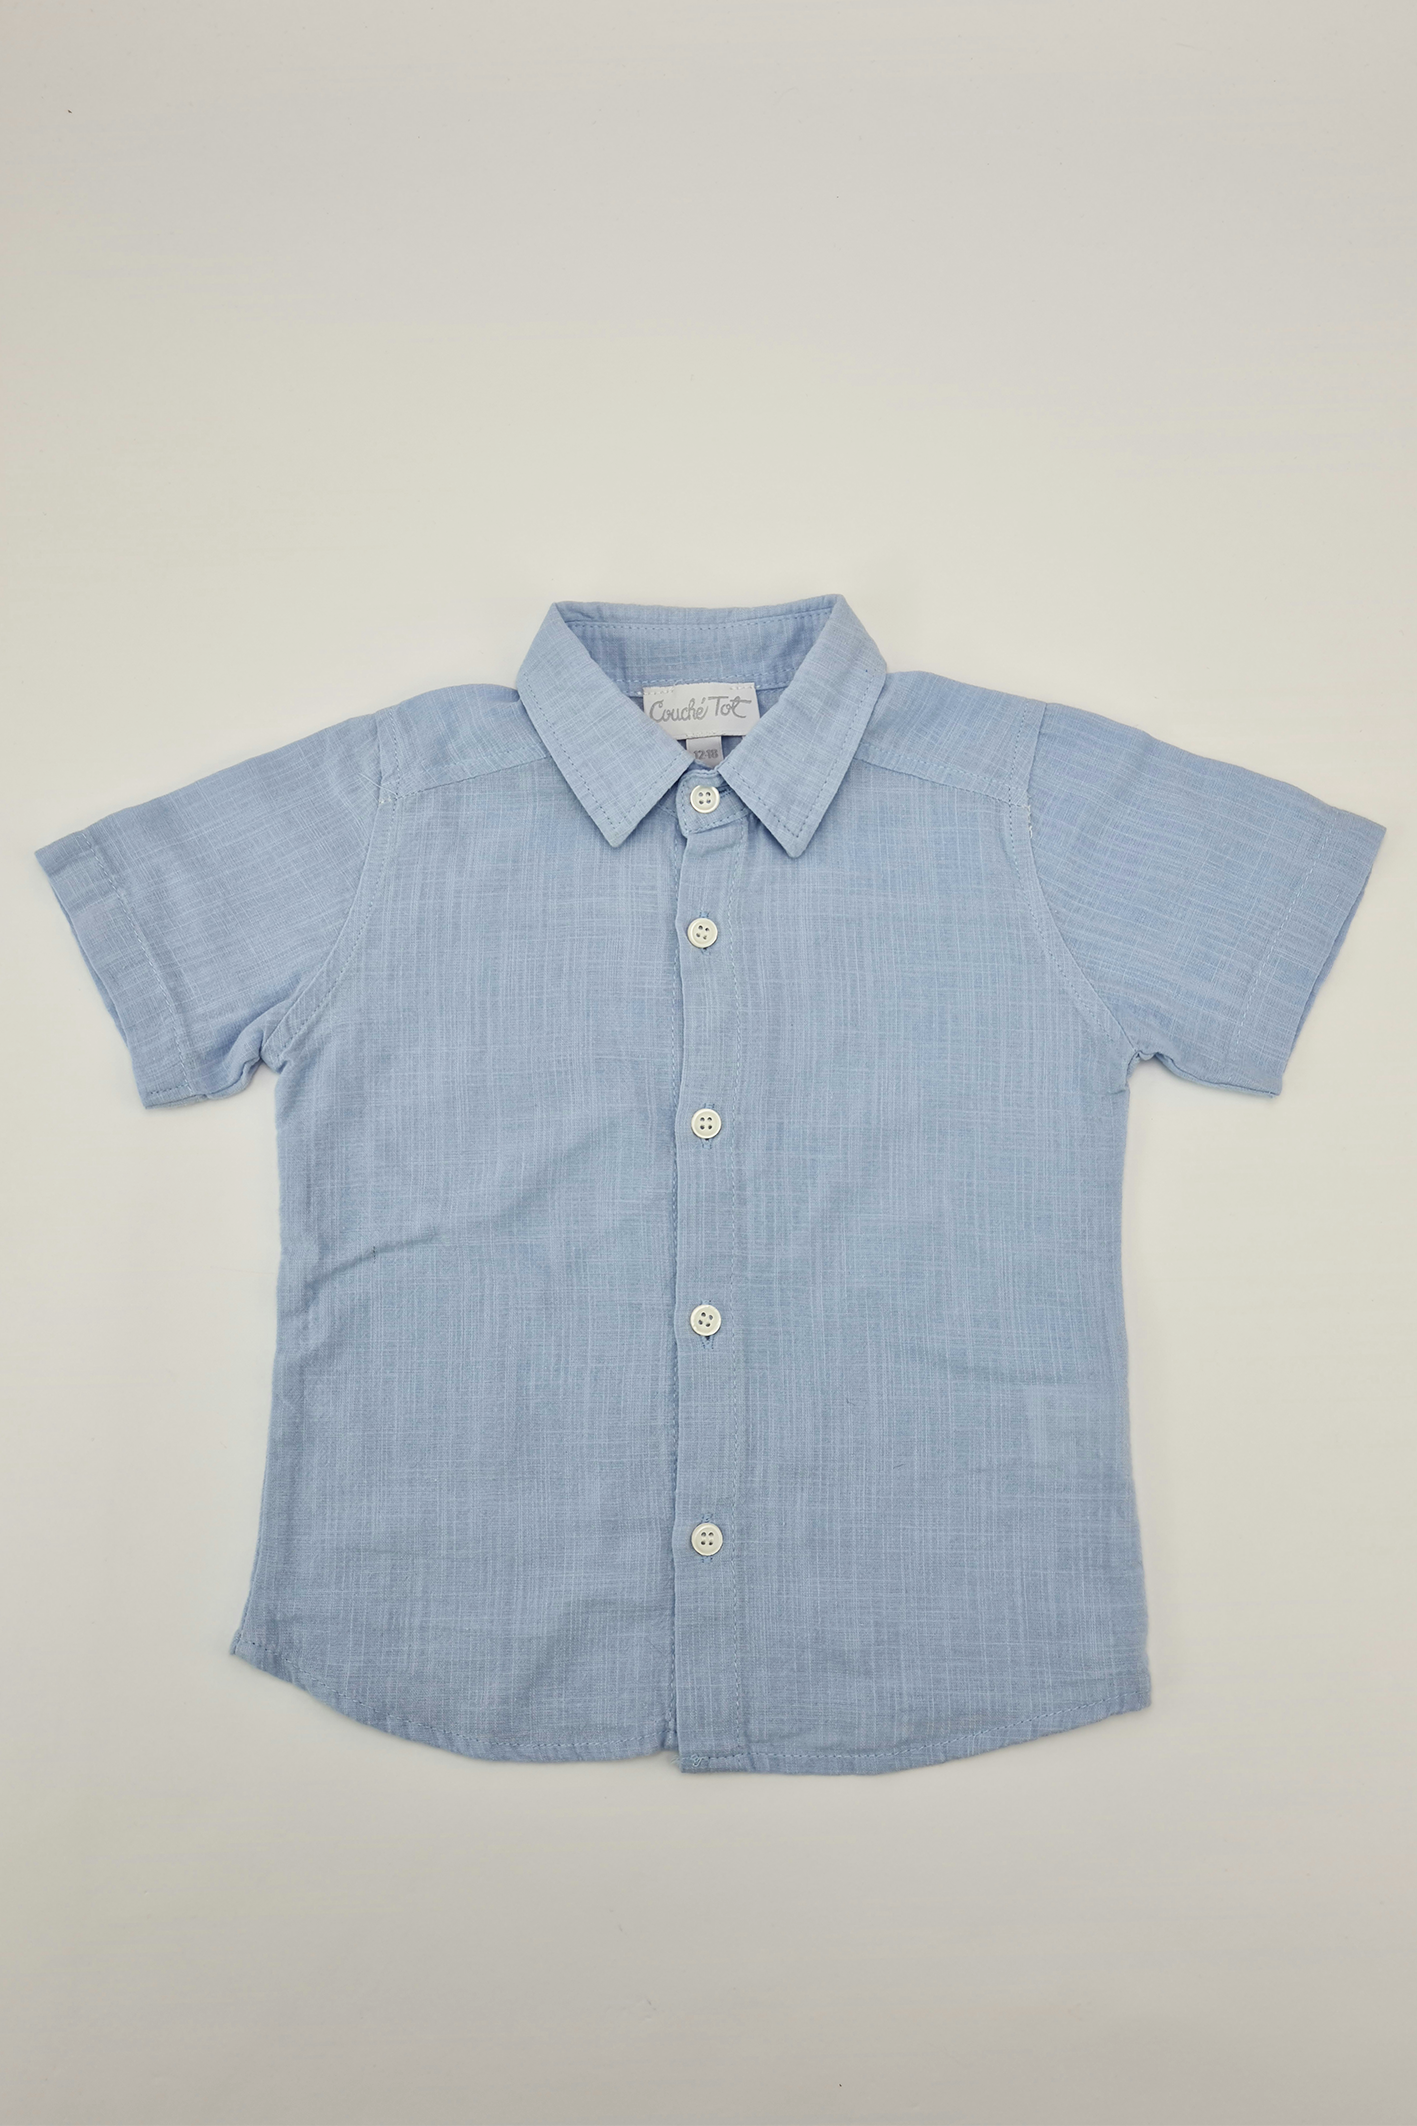 12-18m - Blue Button-up Shirt